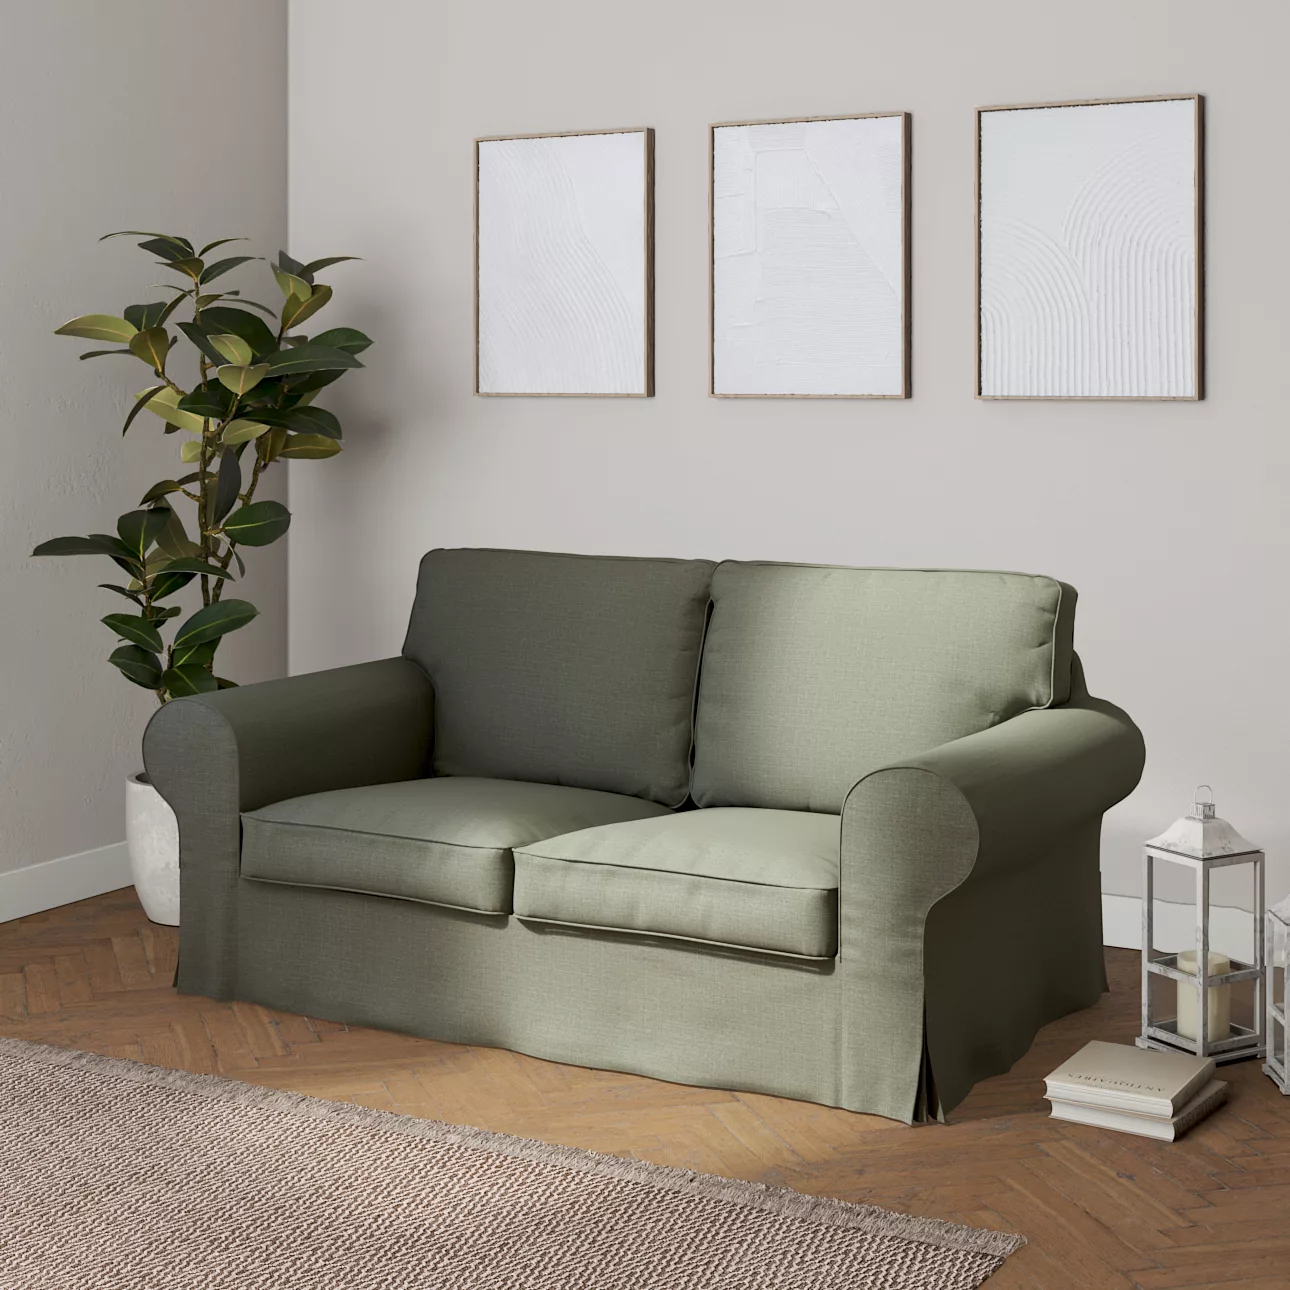 Bezug für Ektorp 2-Sitzer Schlafsofa ALTES Modell, khaki, Sofabezug Ektorp günstig online kaufen